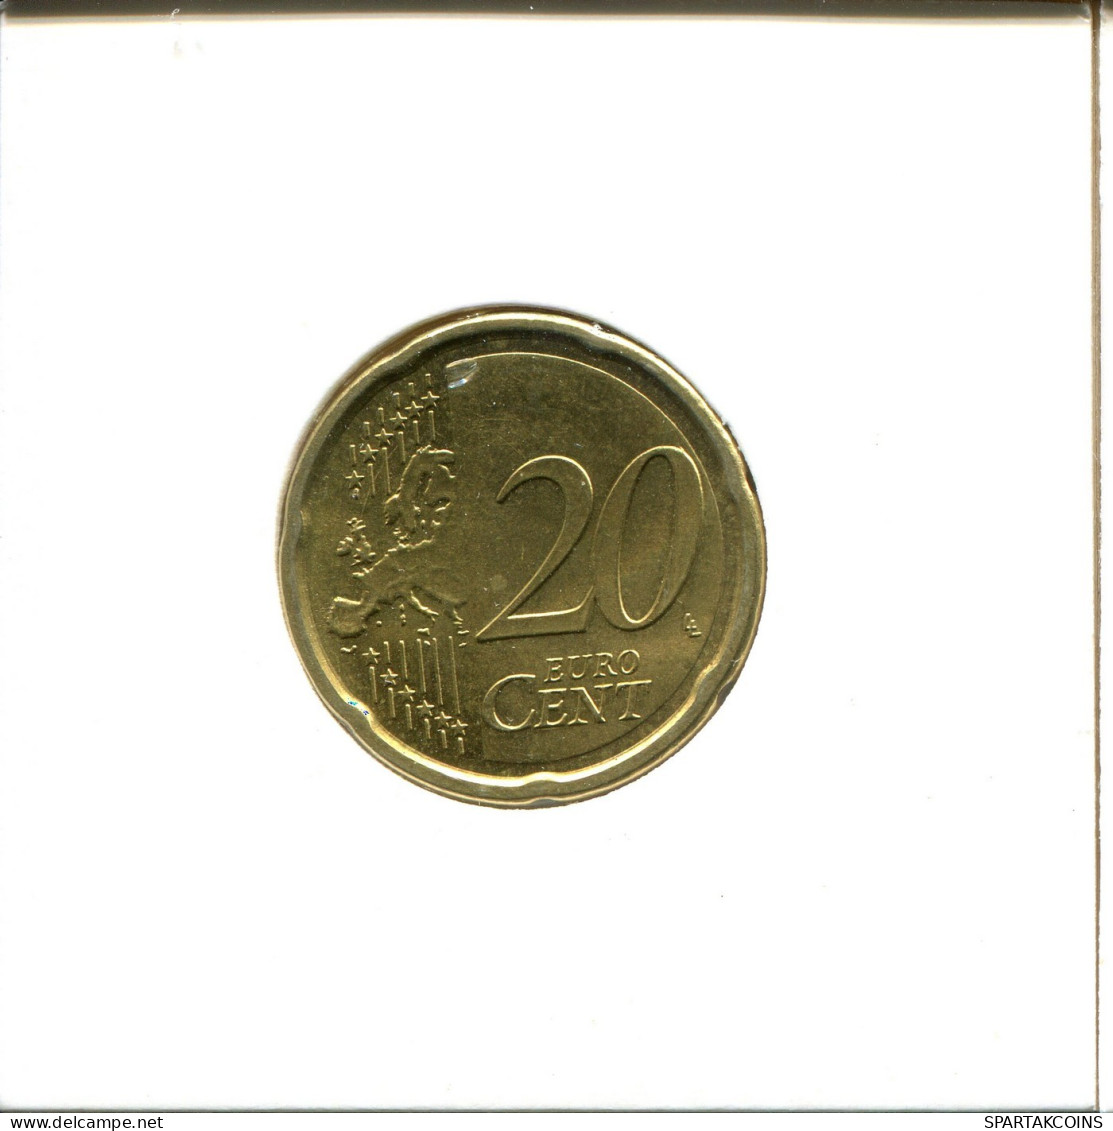 20 EURO CENTS 2009 ITALY Coin #EU243.U.A - Italy